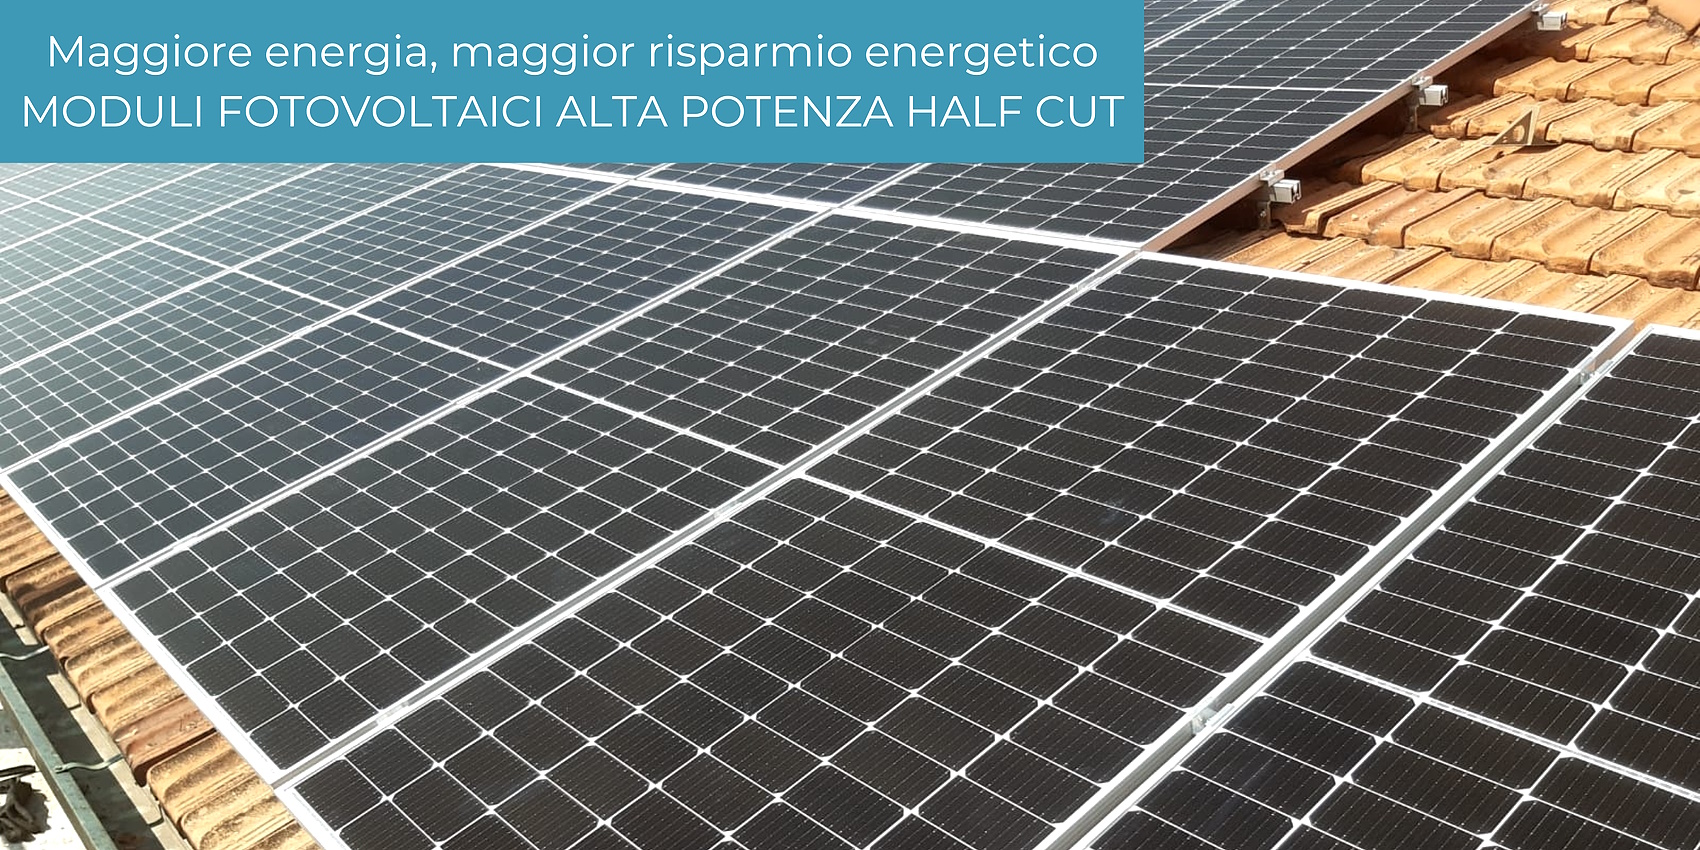 maggiore energia, maggior risparmio energetico moduli fotovoltaici ad alta potenza halfcut